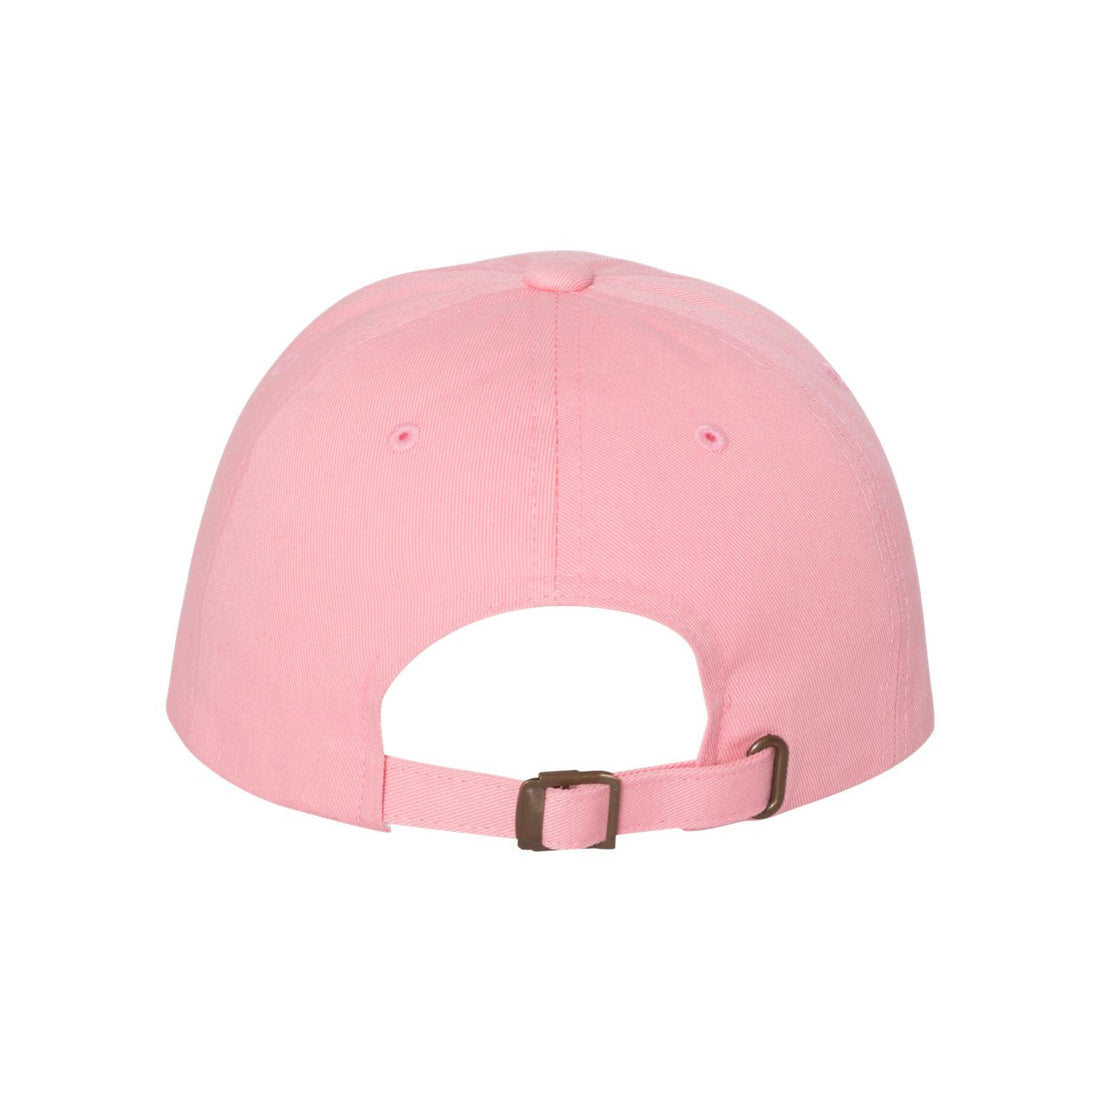 Dragonette - Twennies Pink Dad Hat